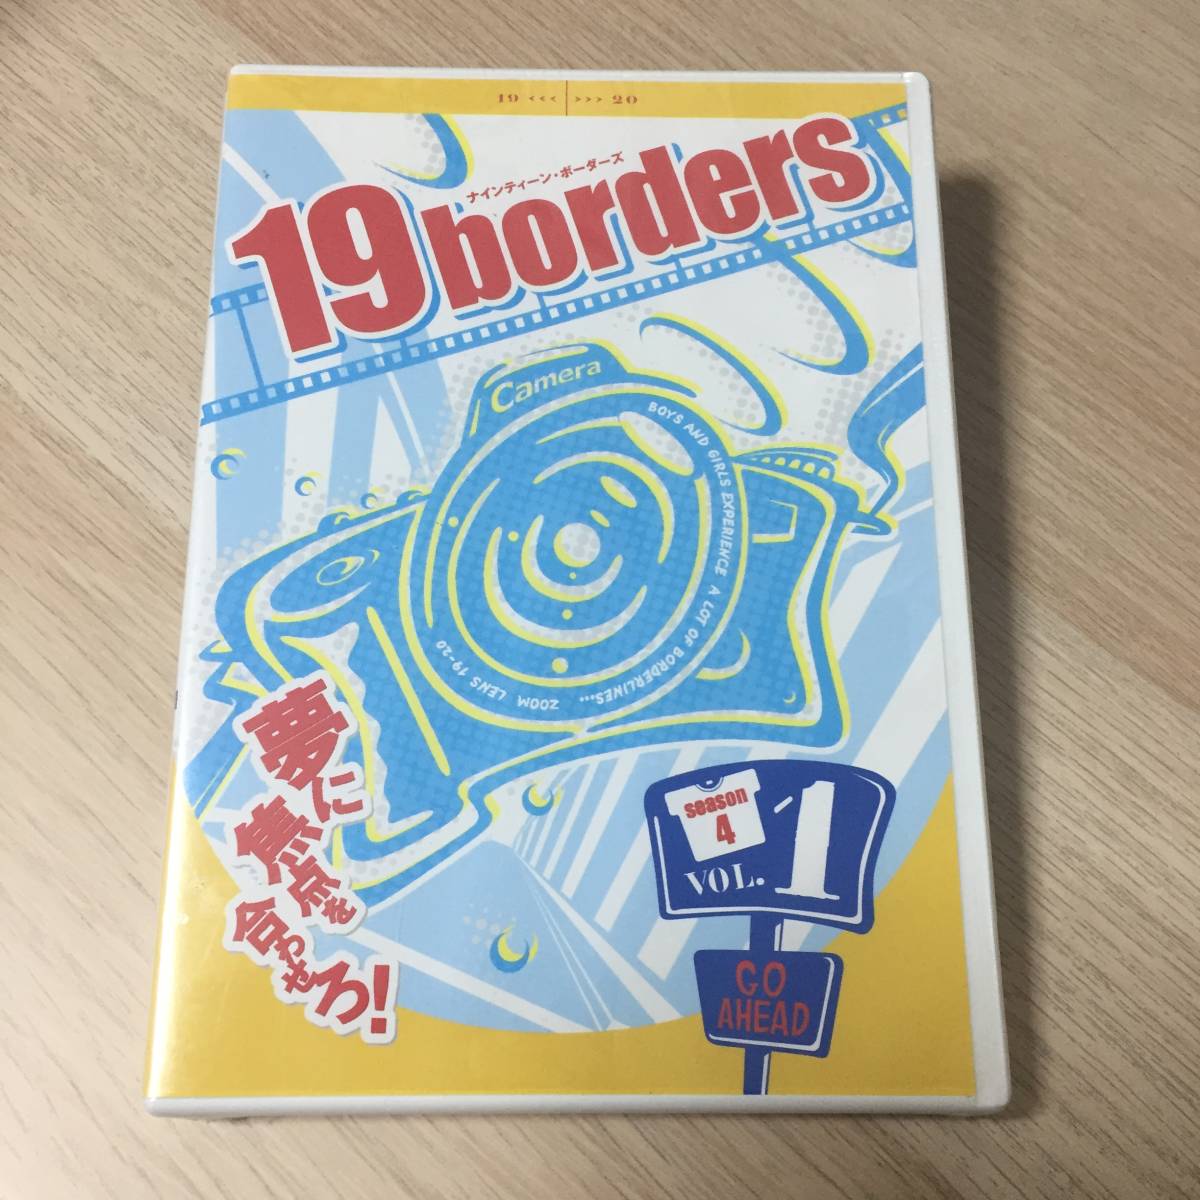 19borders season4 Vol.1 TVドラマ DVD★新品未開封